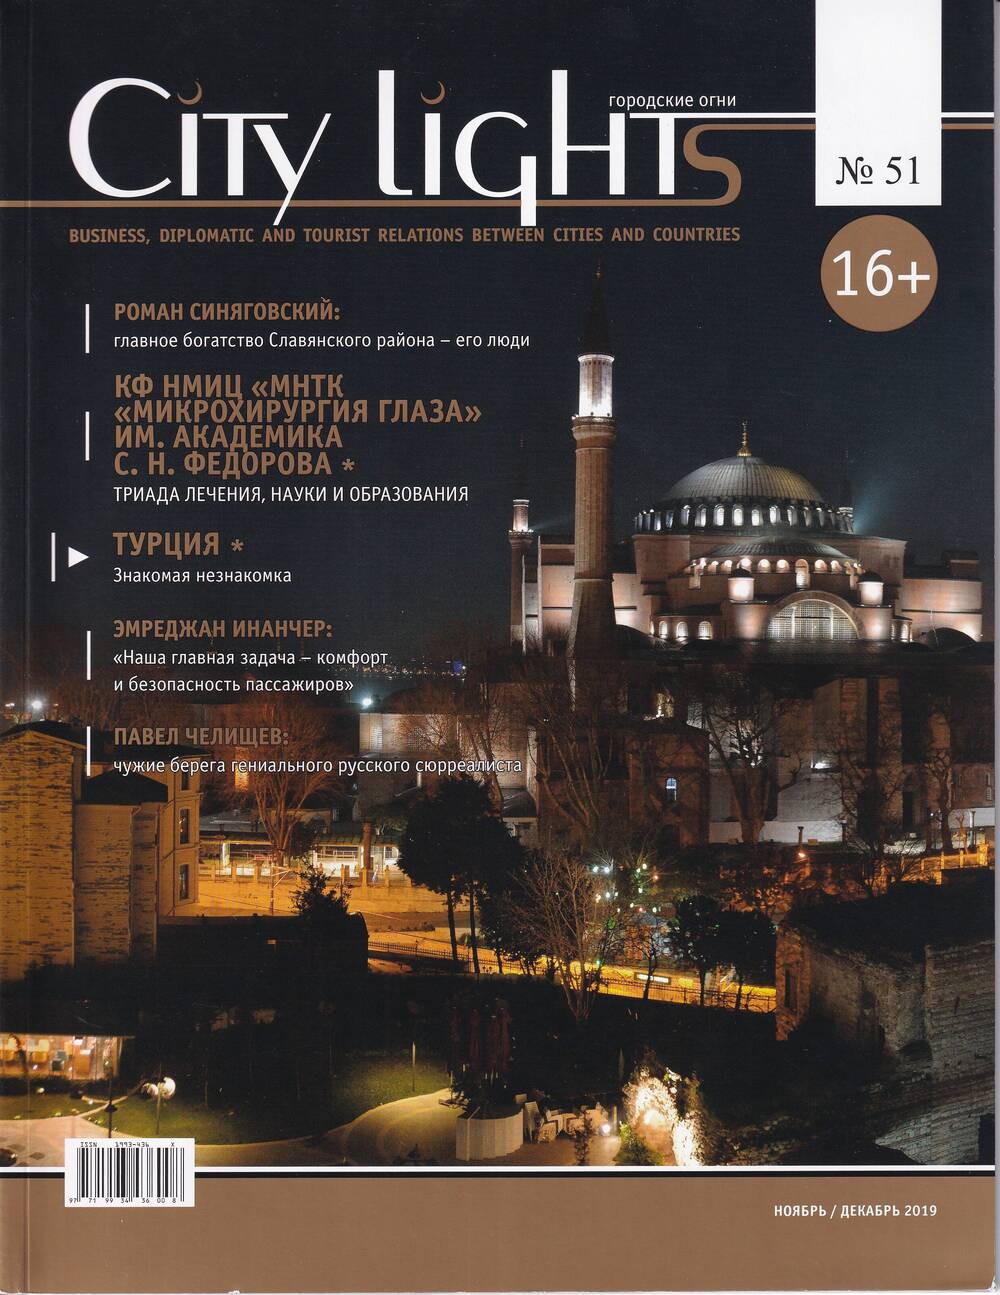 Журнал City lights Городские огни №51 ноябрь/декабрь 2019 года. 64 стр.